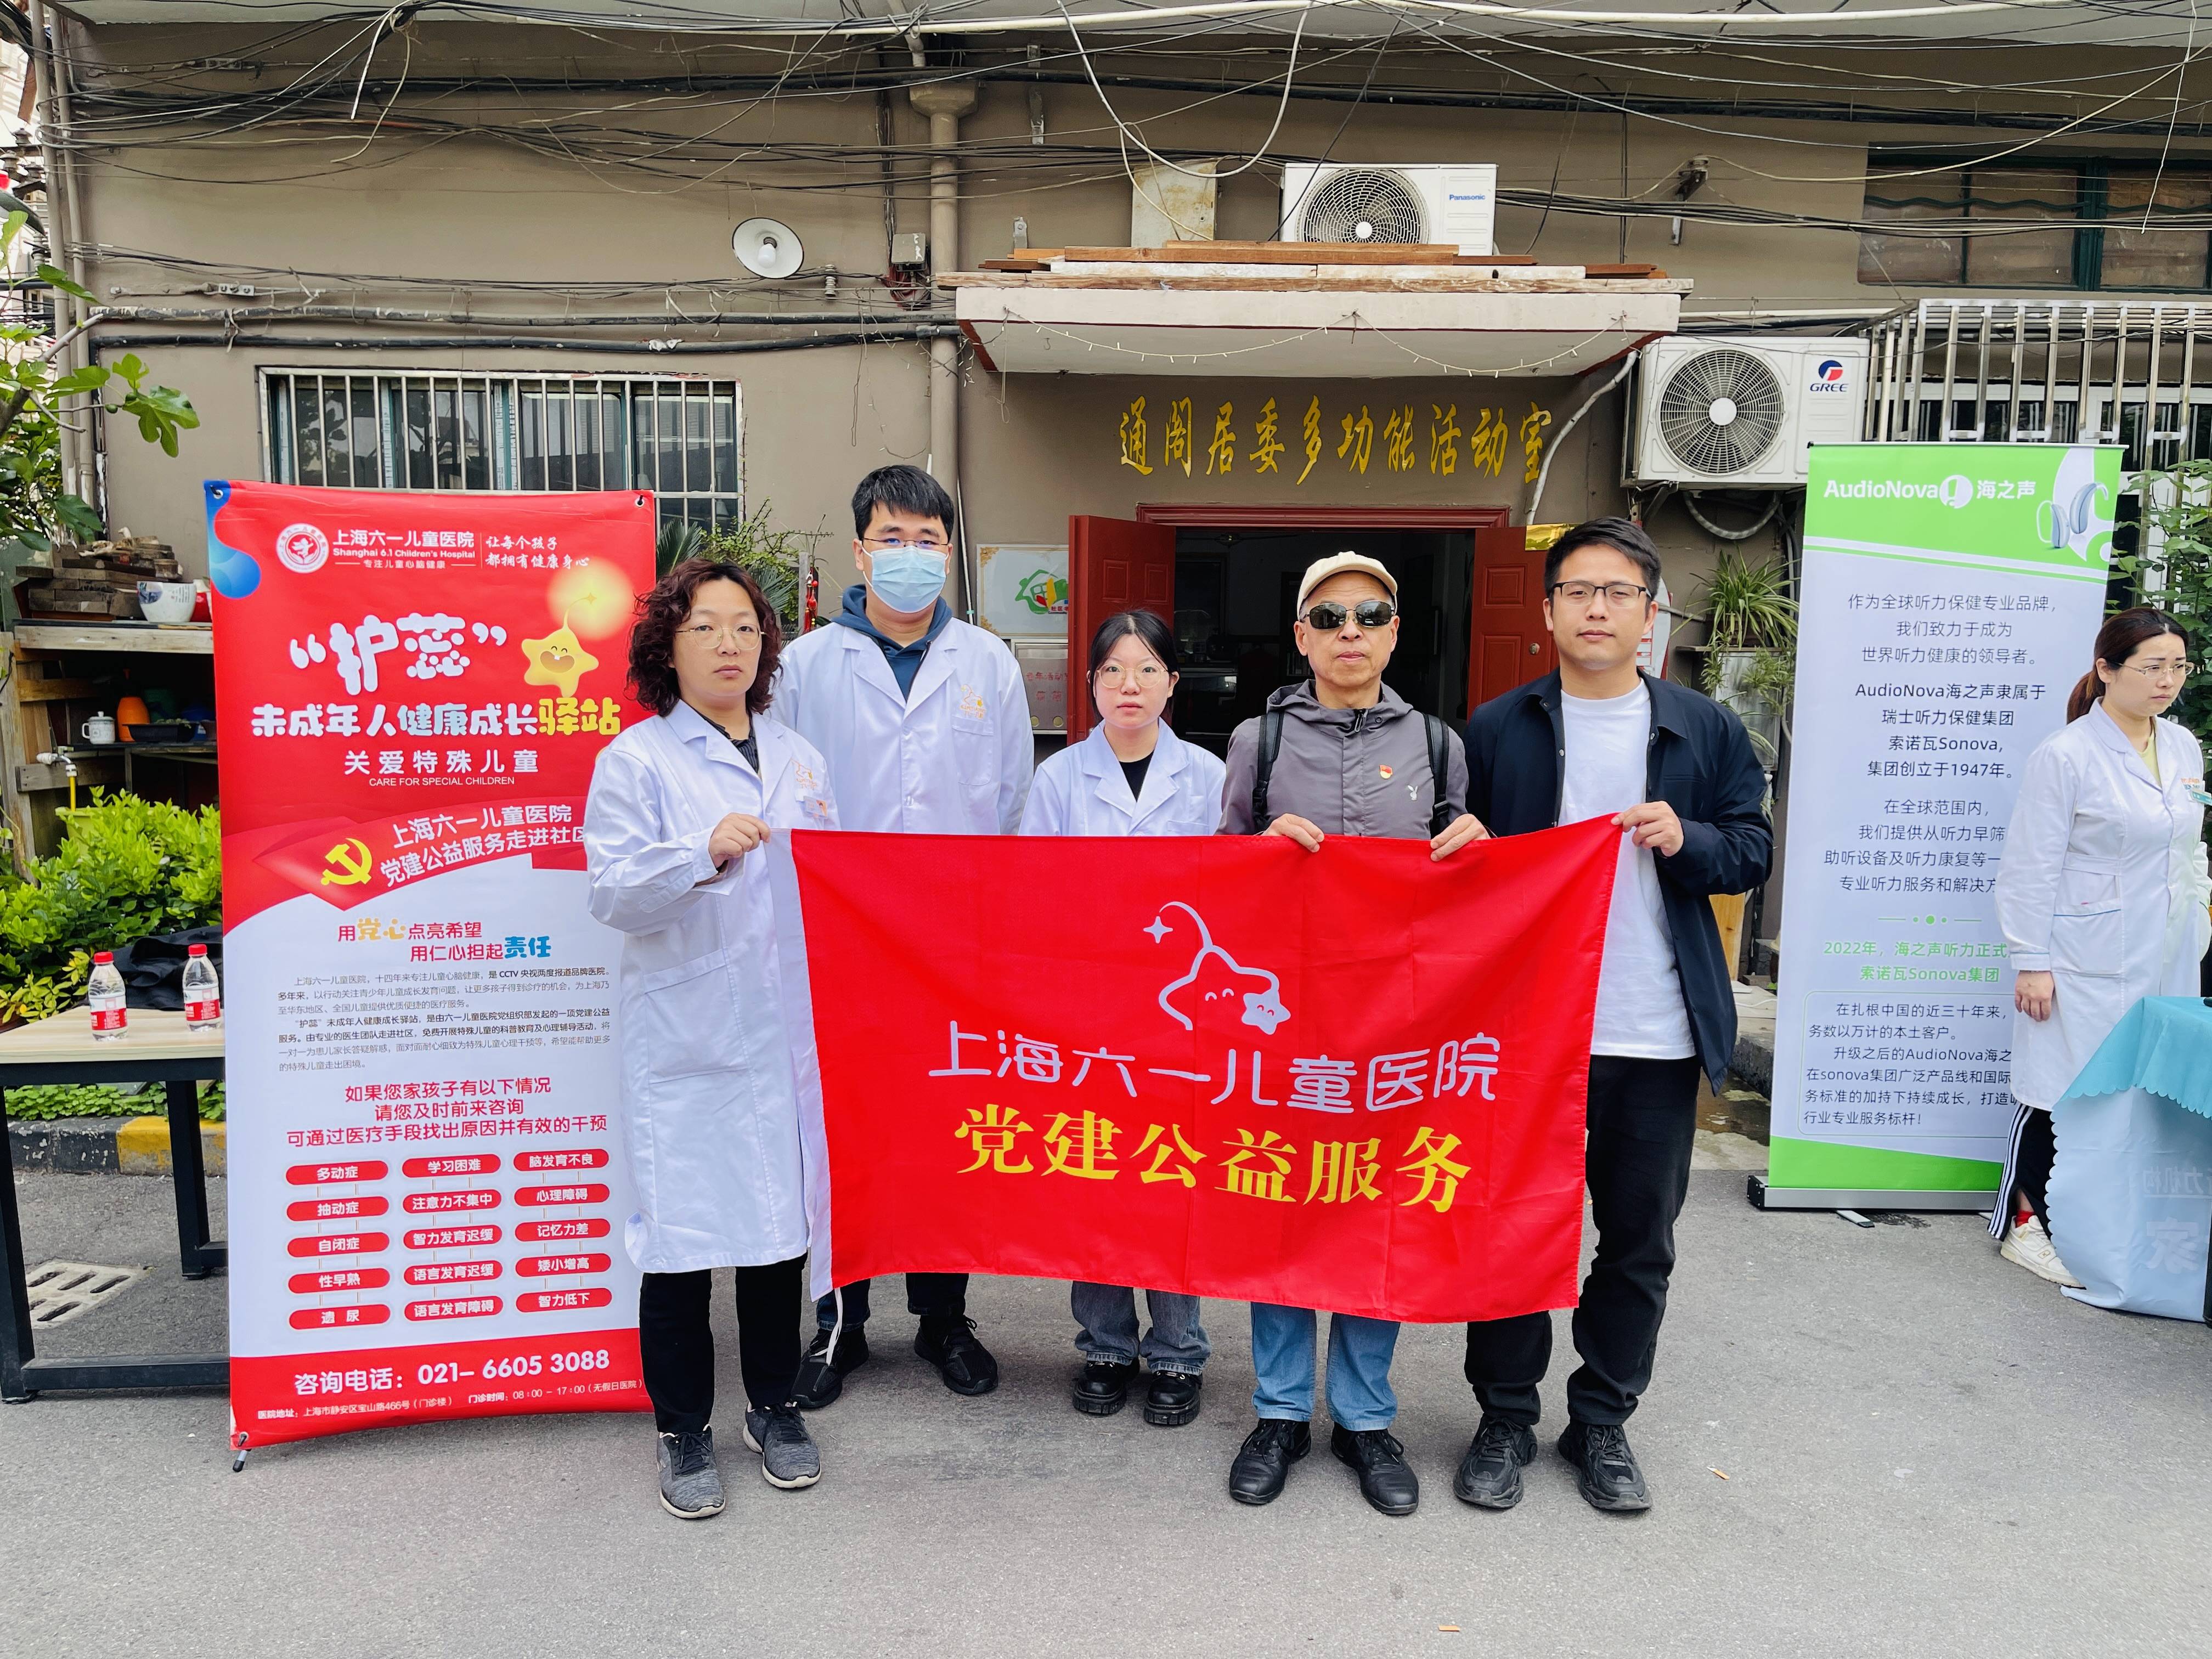 社区居民福音！上海六一儿童医院开展健康义诊，专业育儿指导助家长轻松育儿